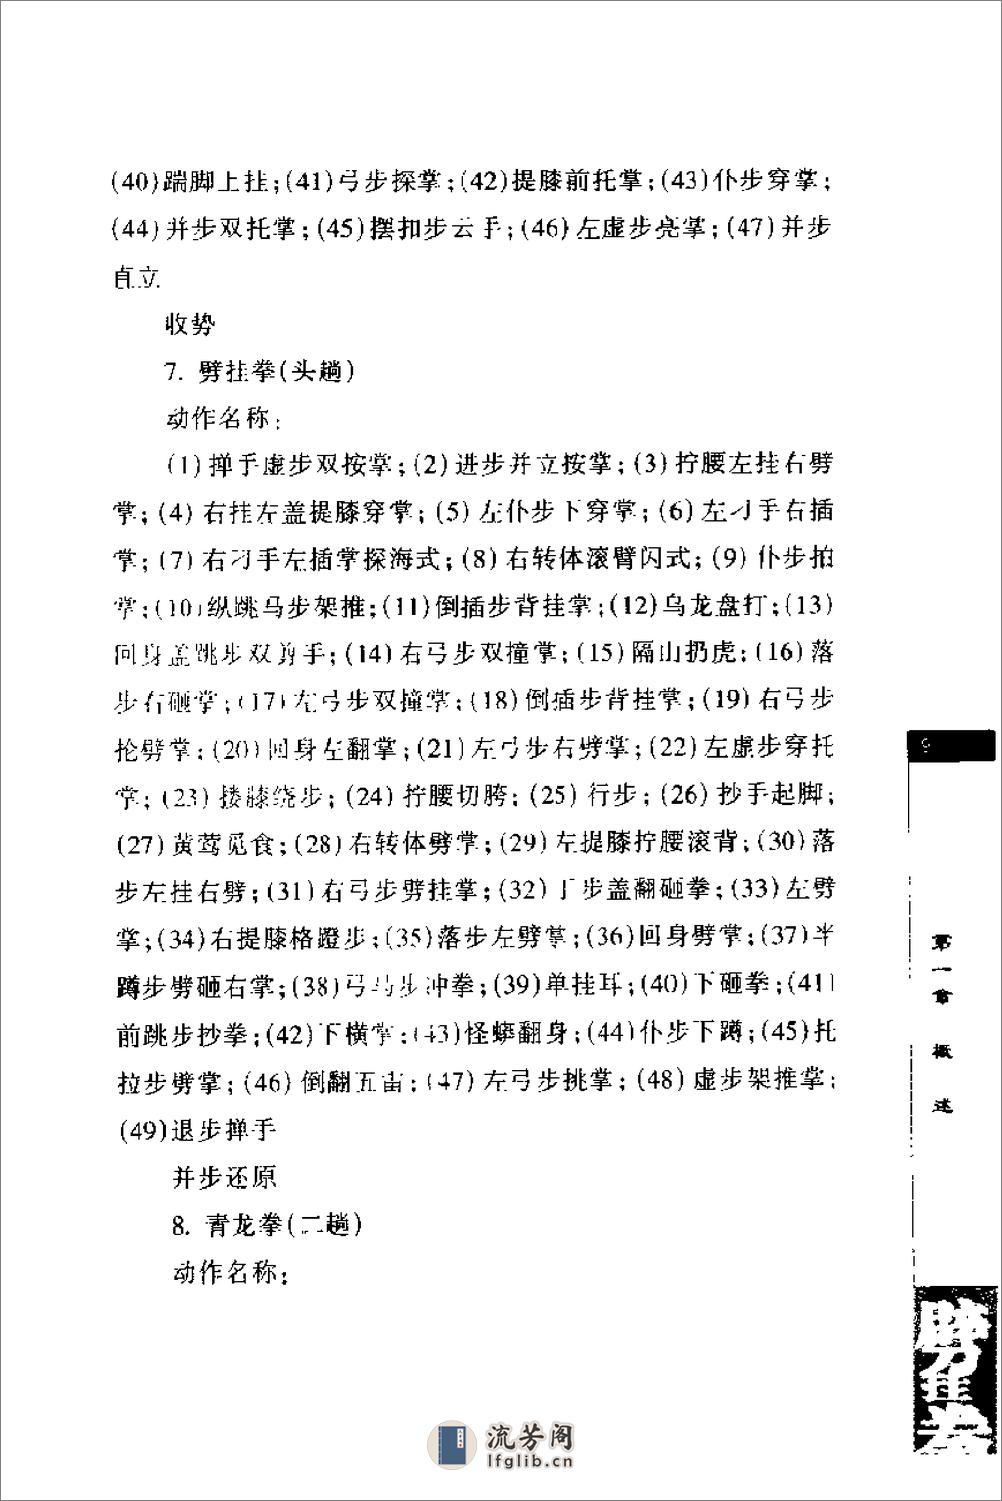 《劈挂拳》中国武术系列规定套路编写组 - 第15页预览图